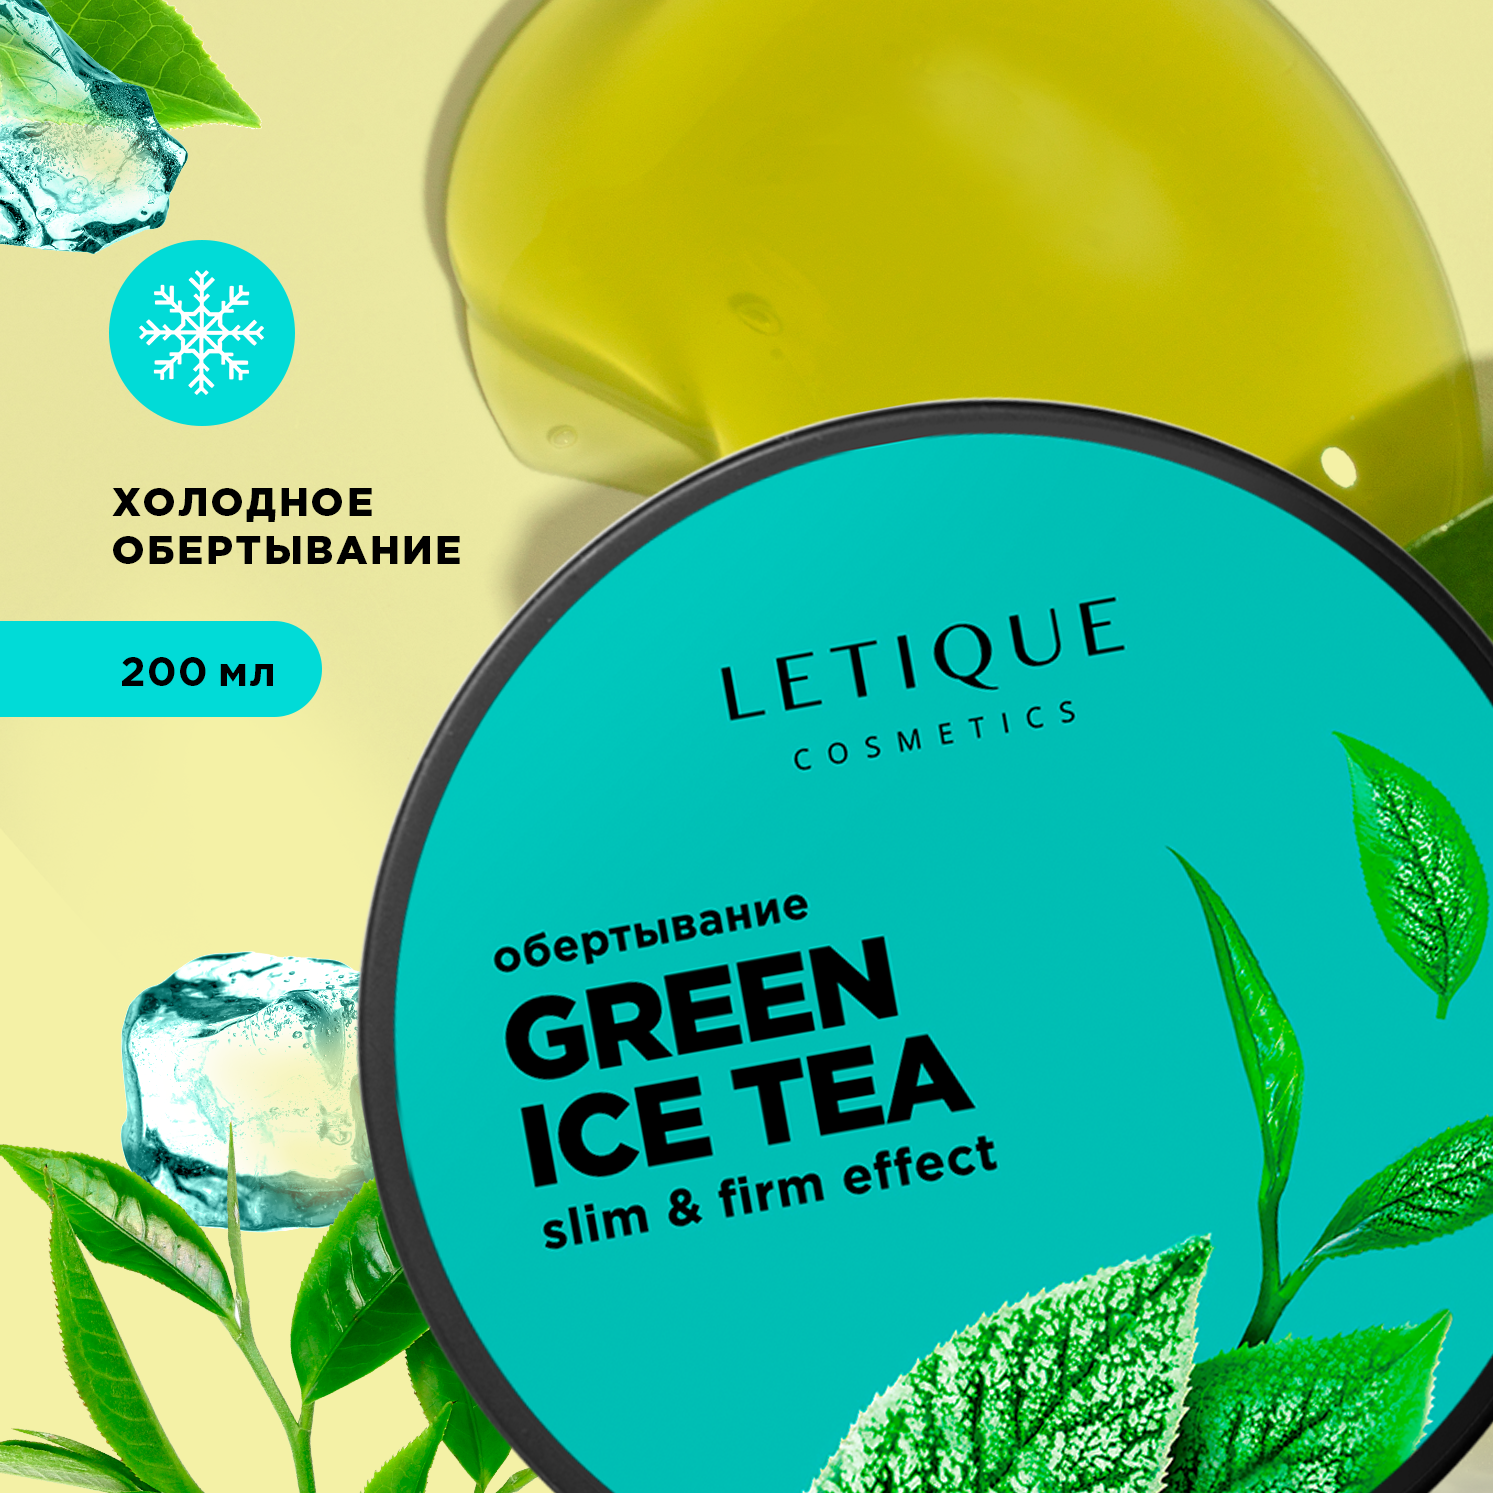 Обертывание холодное для тела Letique Cosmetics Green Ice Tea обертывание холодное для тела green ice tea 200 мл letique cosmetics